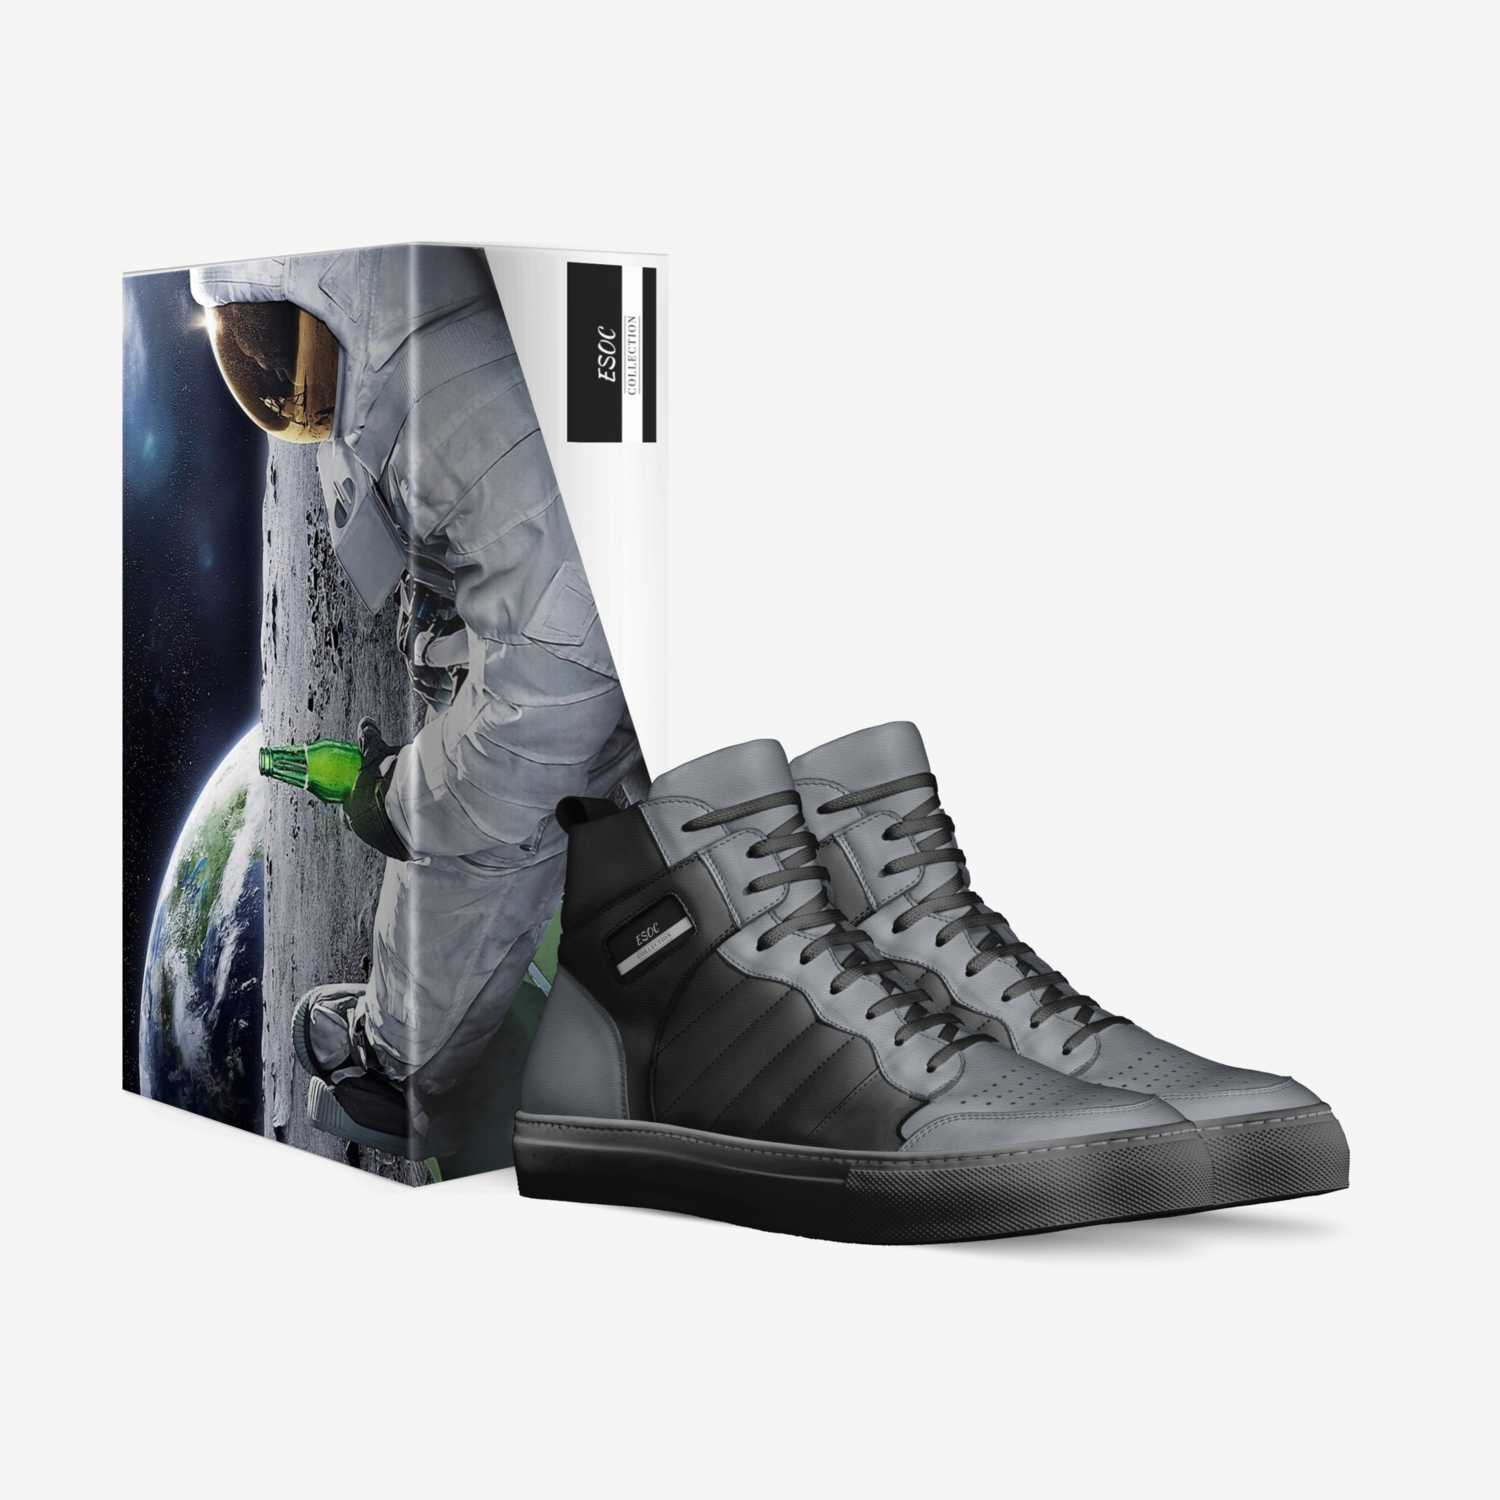 ESOC  custom made in Italy shoes by Devyn Mancilla | Box view